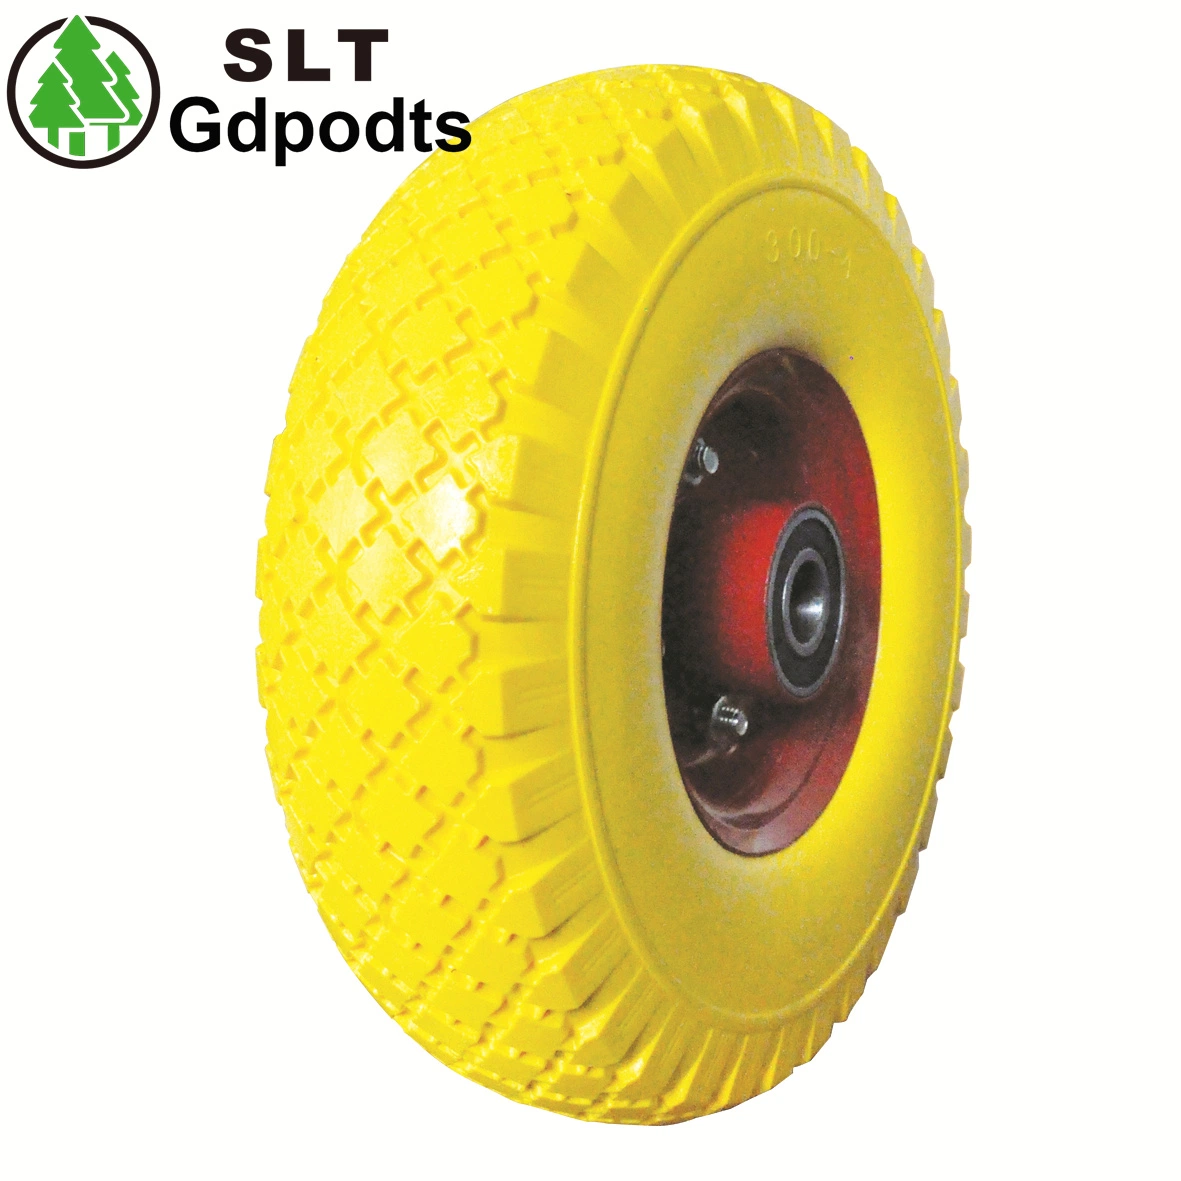 300-4 galvanizado do cubo de roda à prova de punção de borracha da roda Wheelbarrow pneu do lado da roda rodas do veículo